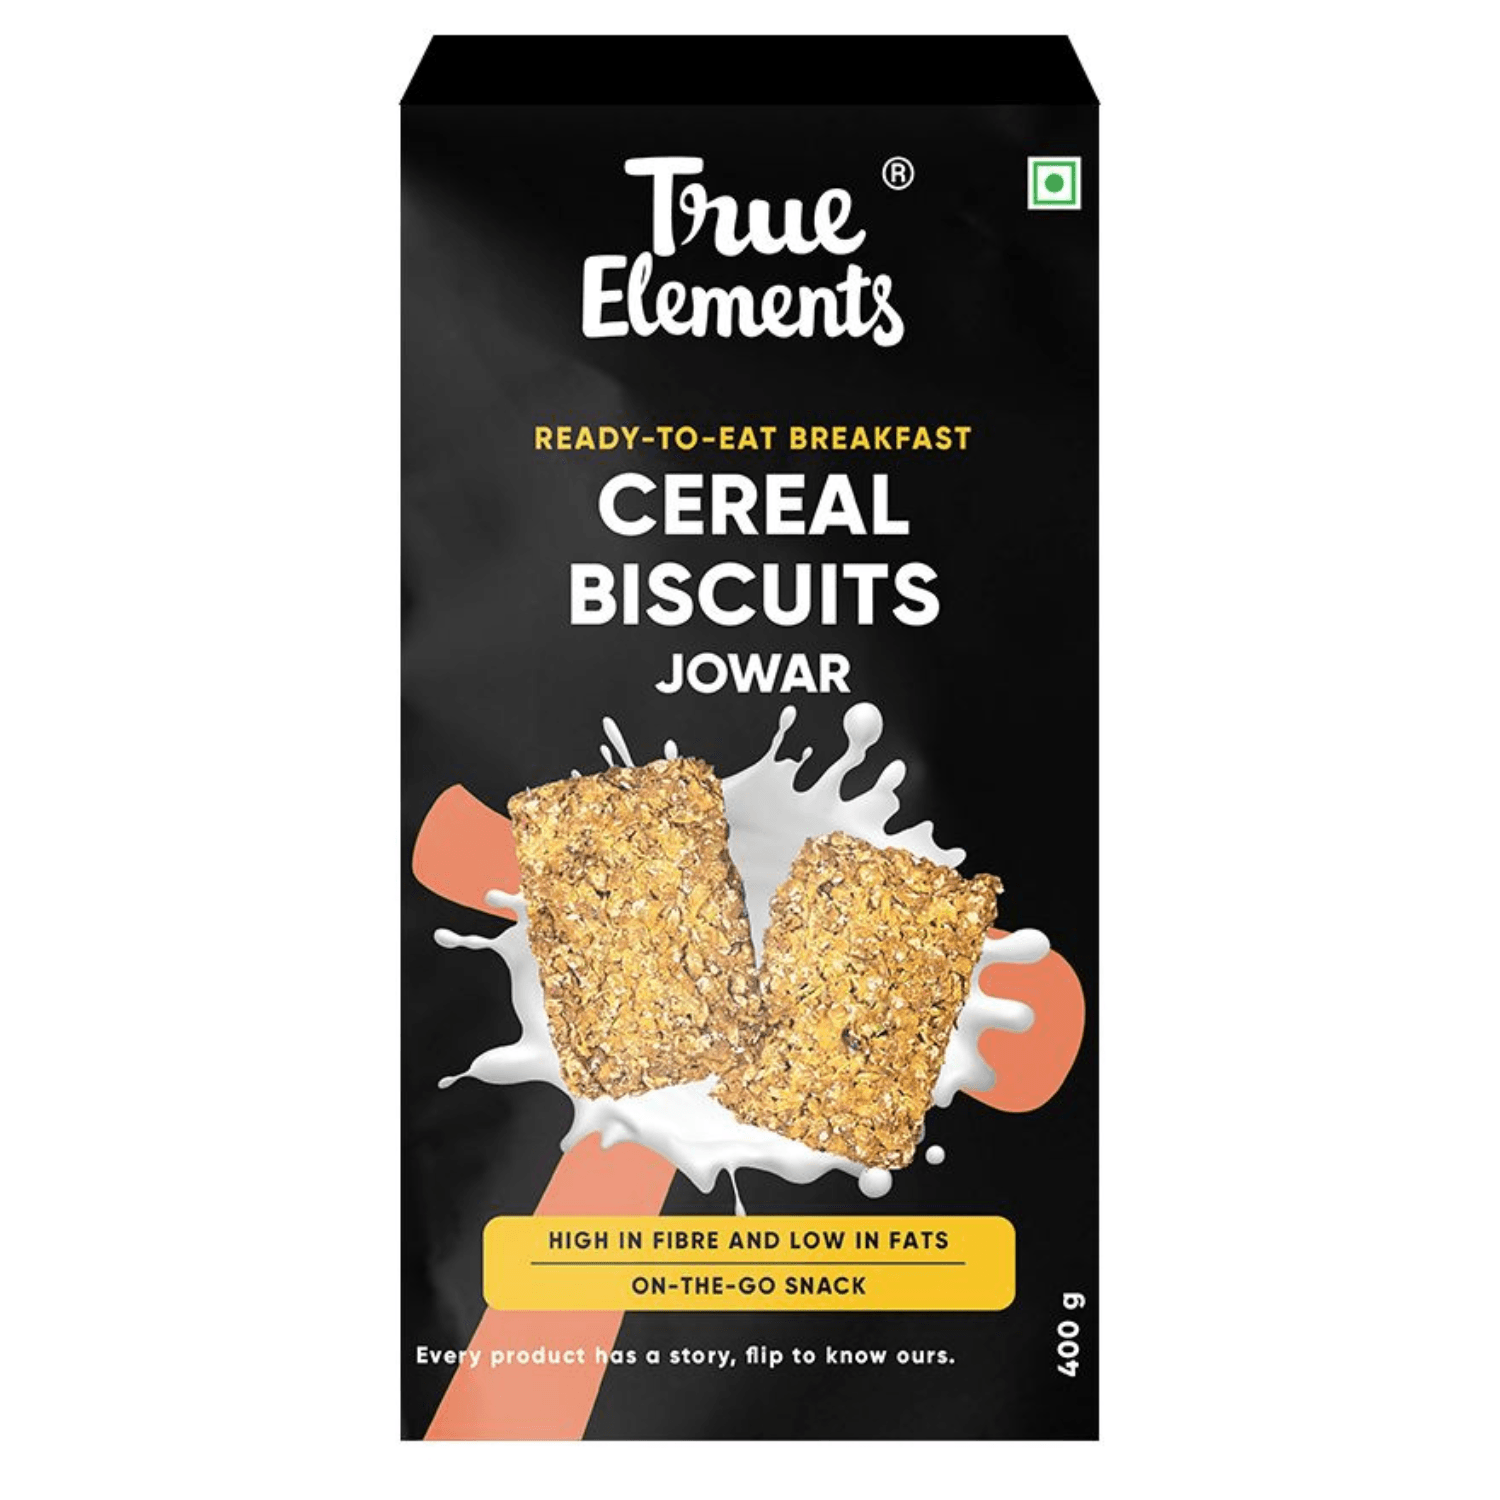 True Elements Cereal Biscuits Jowar 400 gm